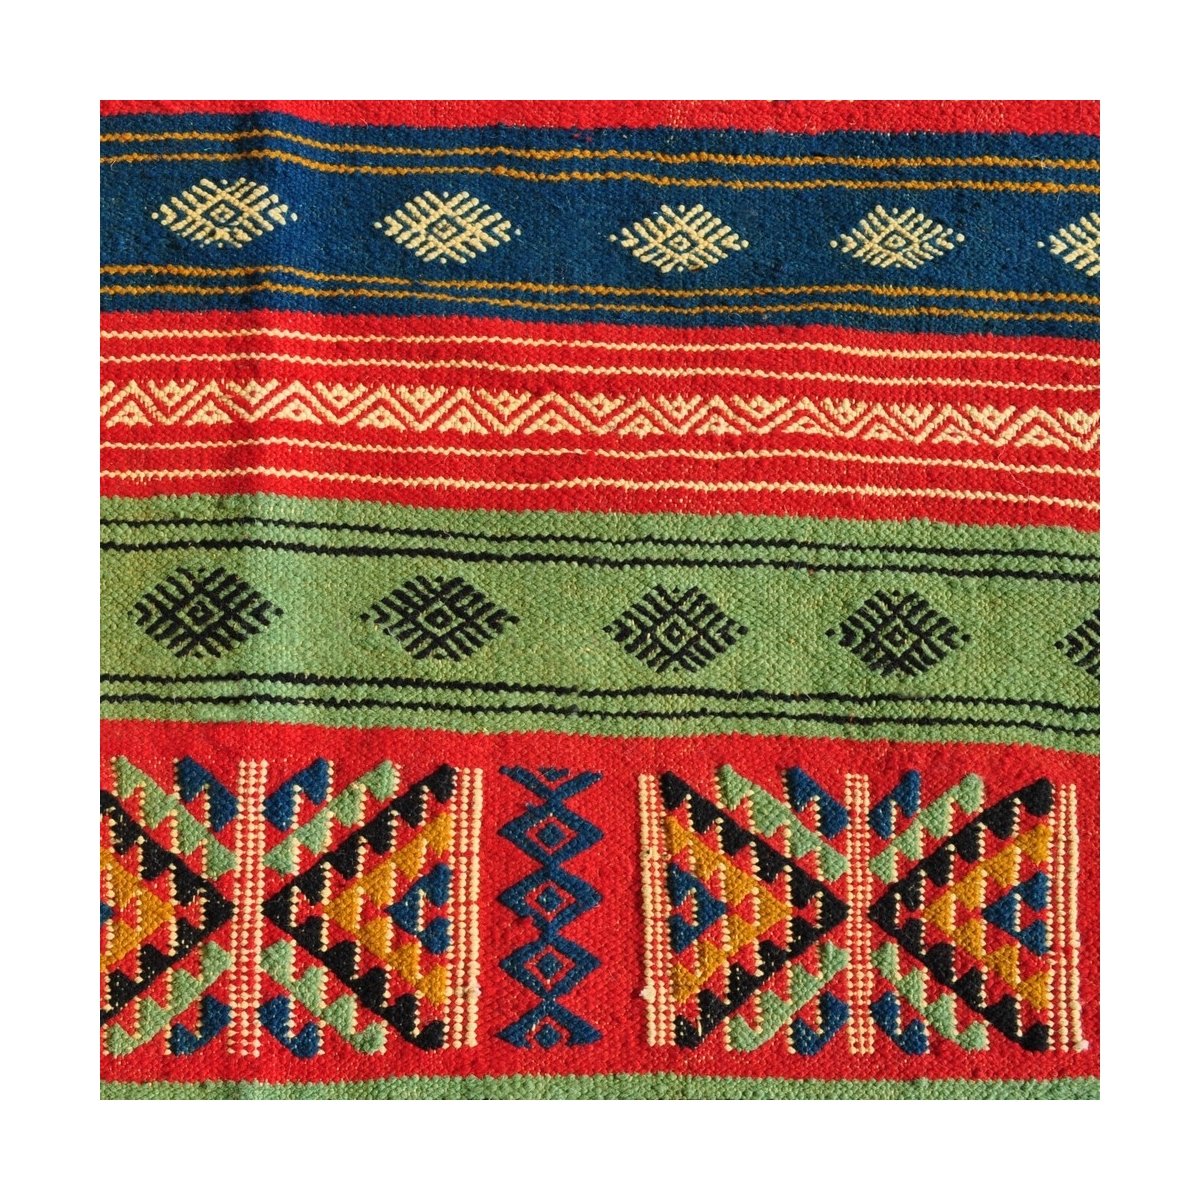 Tapete berbere Tapete Kilim Babjdid 140x250 Amarelo/Multicor (Tecidos à mão, Lã) Tapete tunisiano kilim, estilo marroquino. Tape